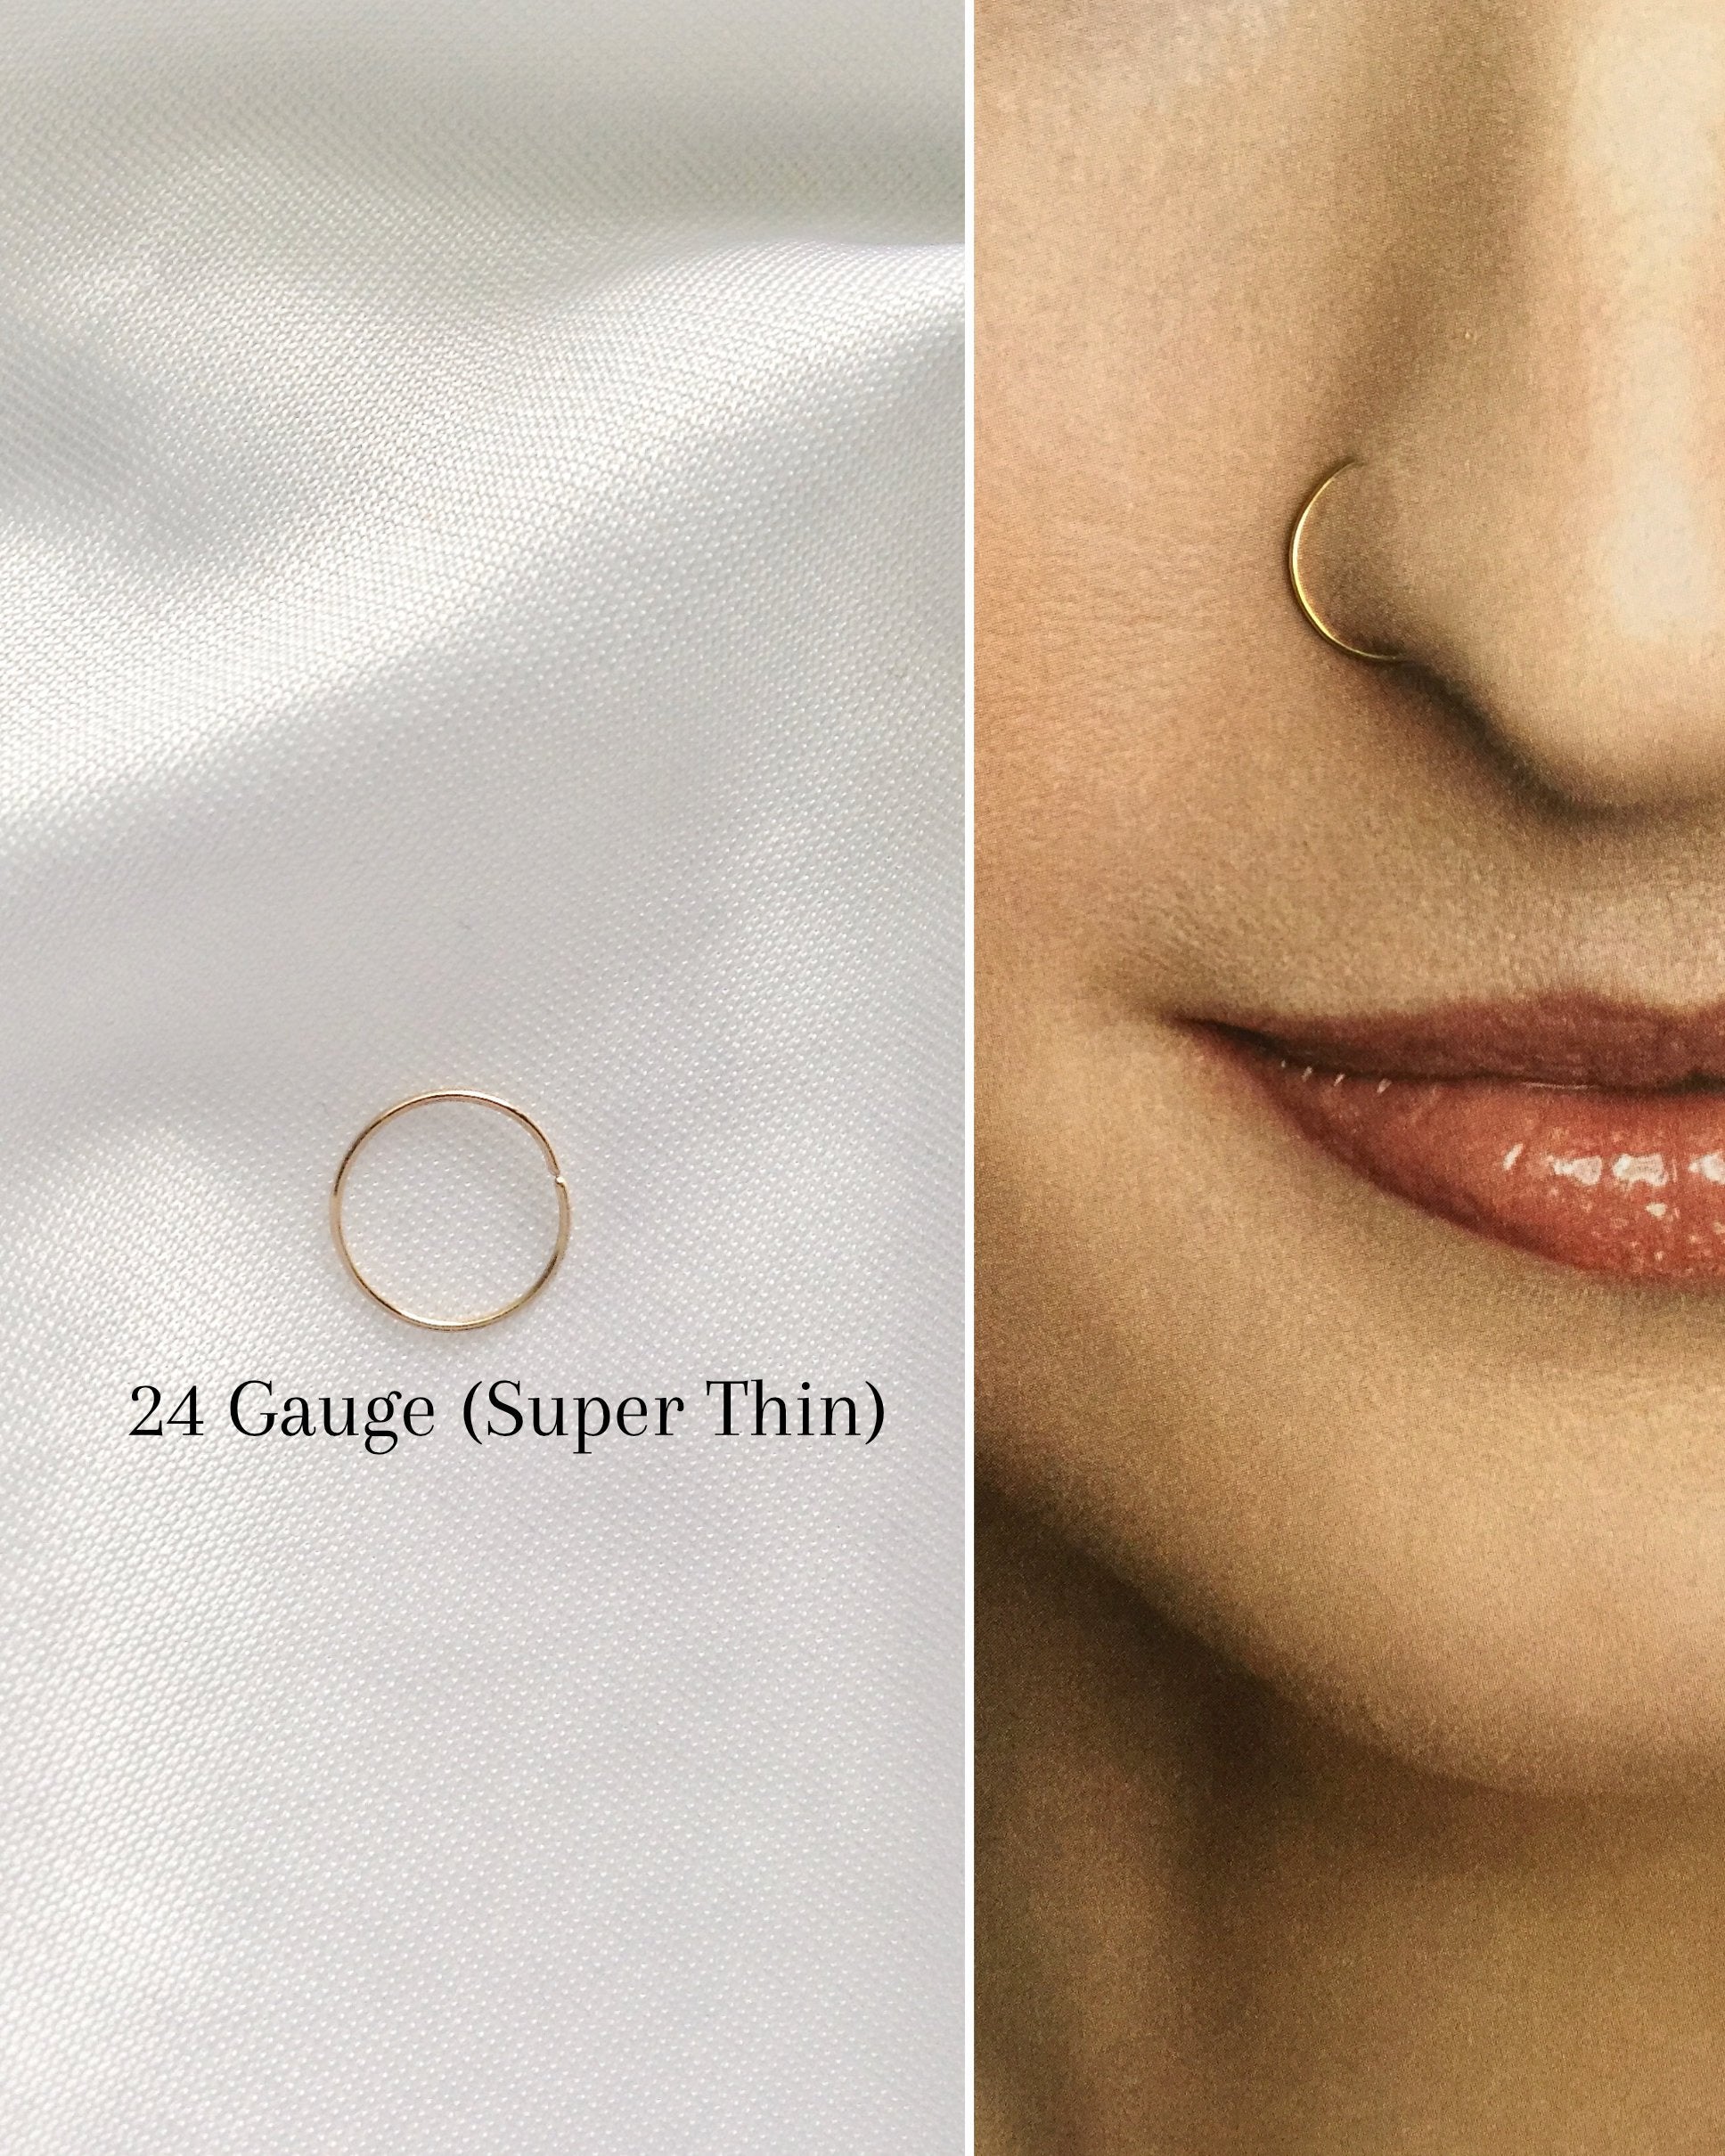 Gold Nose Ring Large Spiral | Spiral Nose Ring | Gold Nose Jewelry – Rock  Your Nose Jewelry Inc.